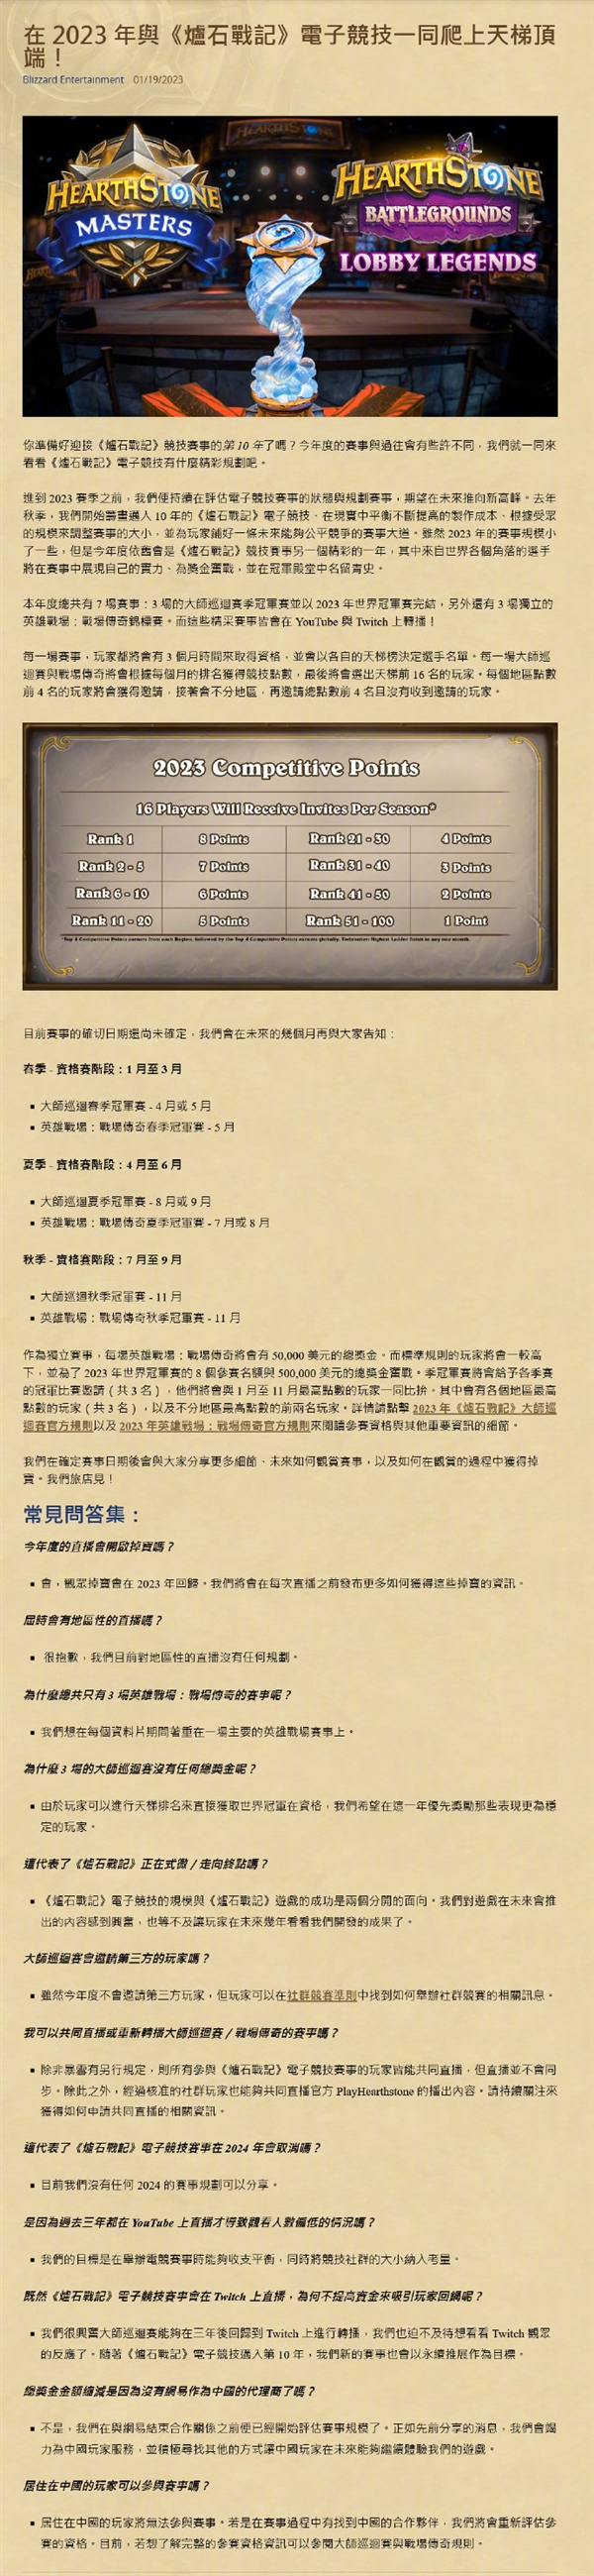 撕破脸！暴雪禁止中国玩家参加炉石赛事引众怒 国内玩家地址卸载所有游戏